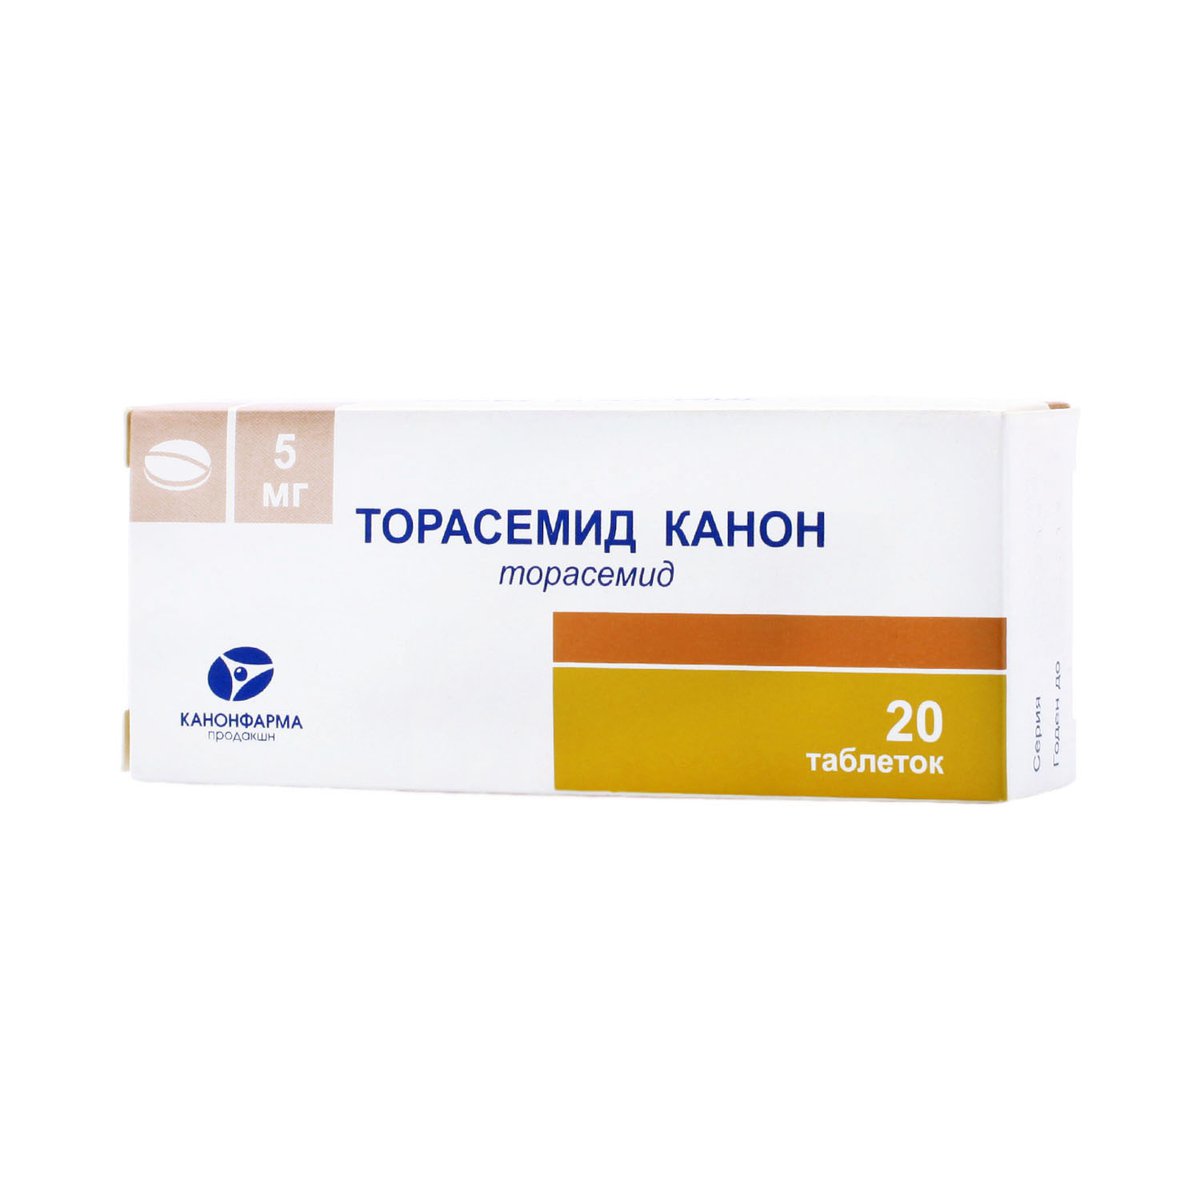 Торасемид канон (таблетки, 20 шт, 5 мг) - цена,  онлайн  .